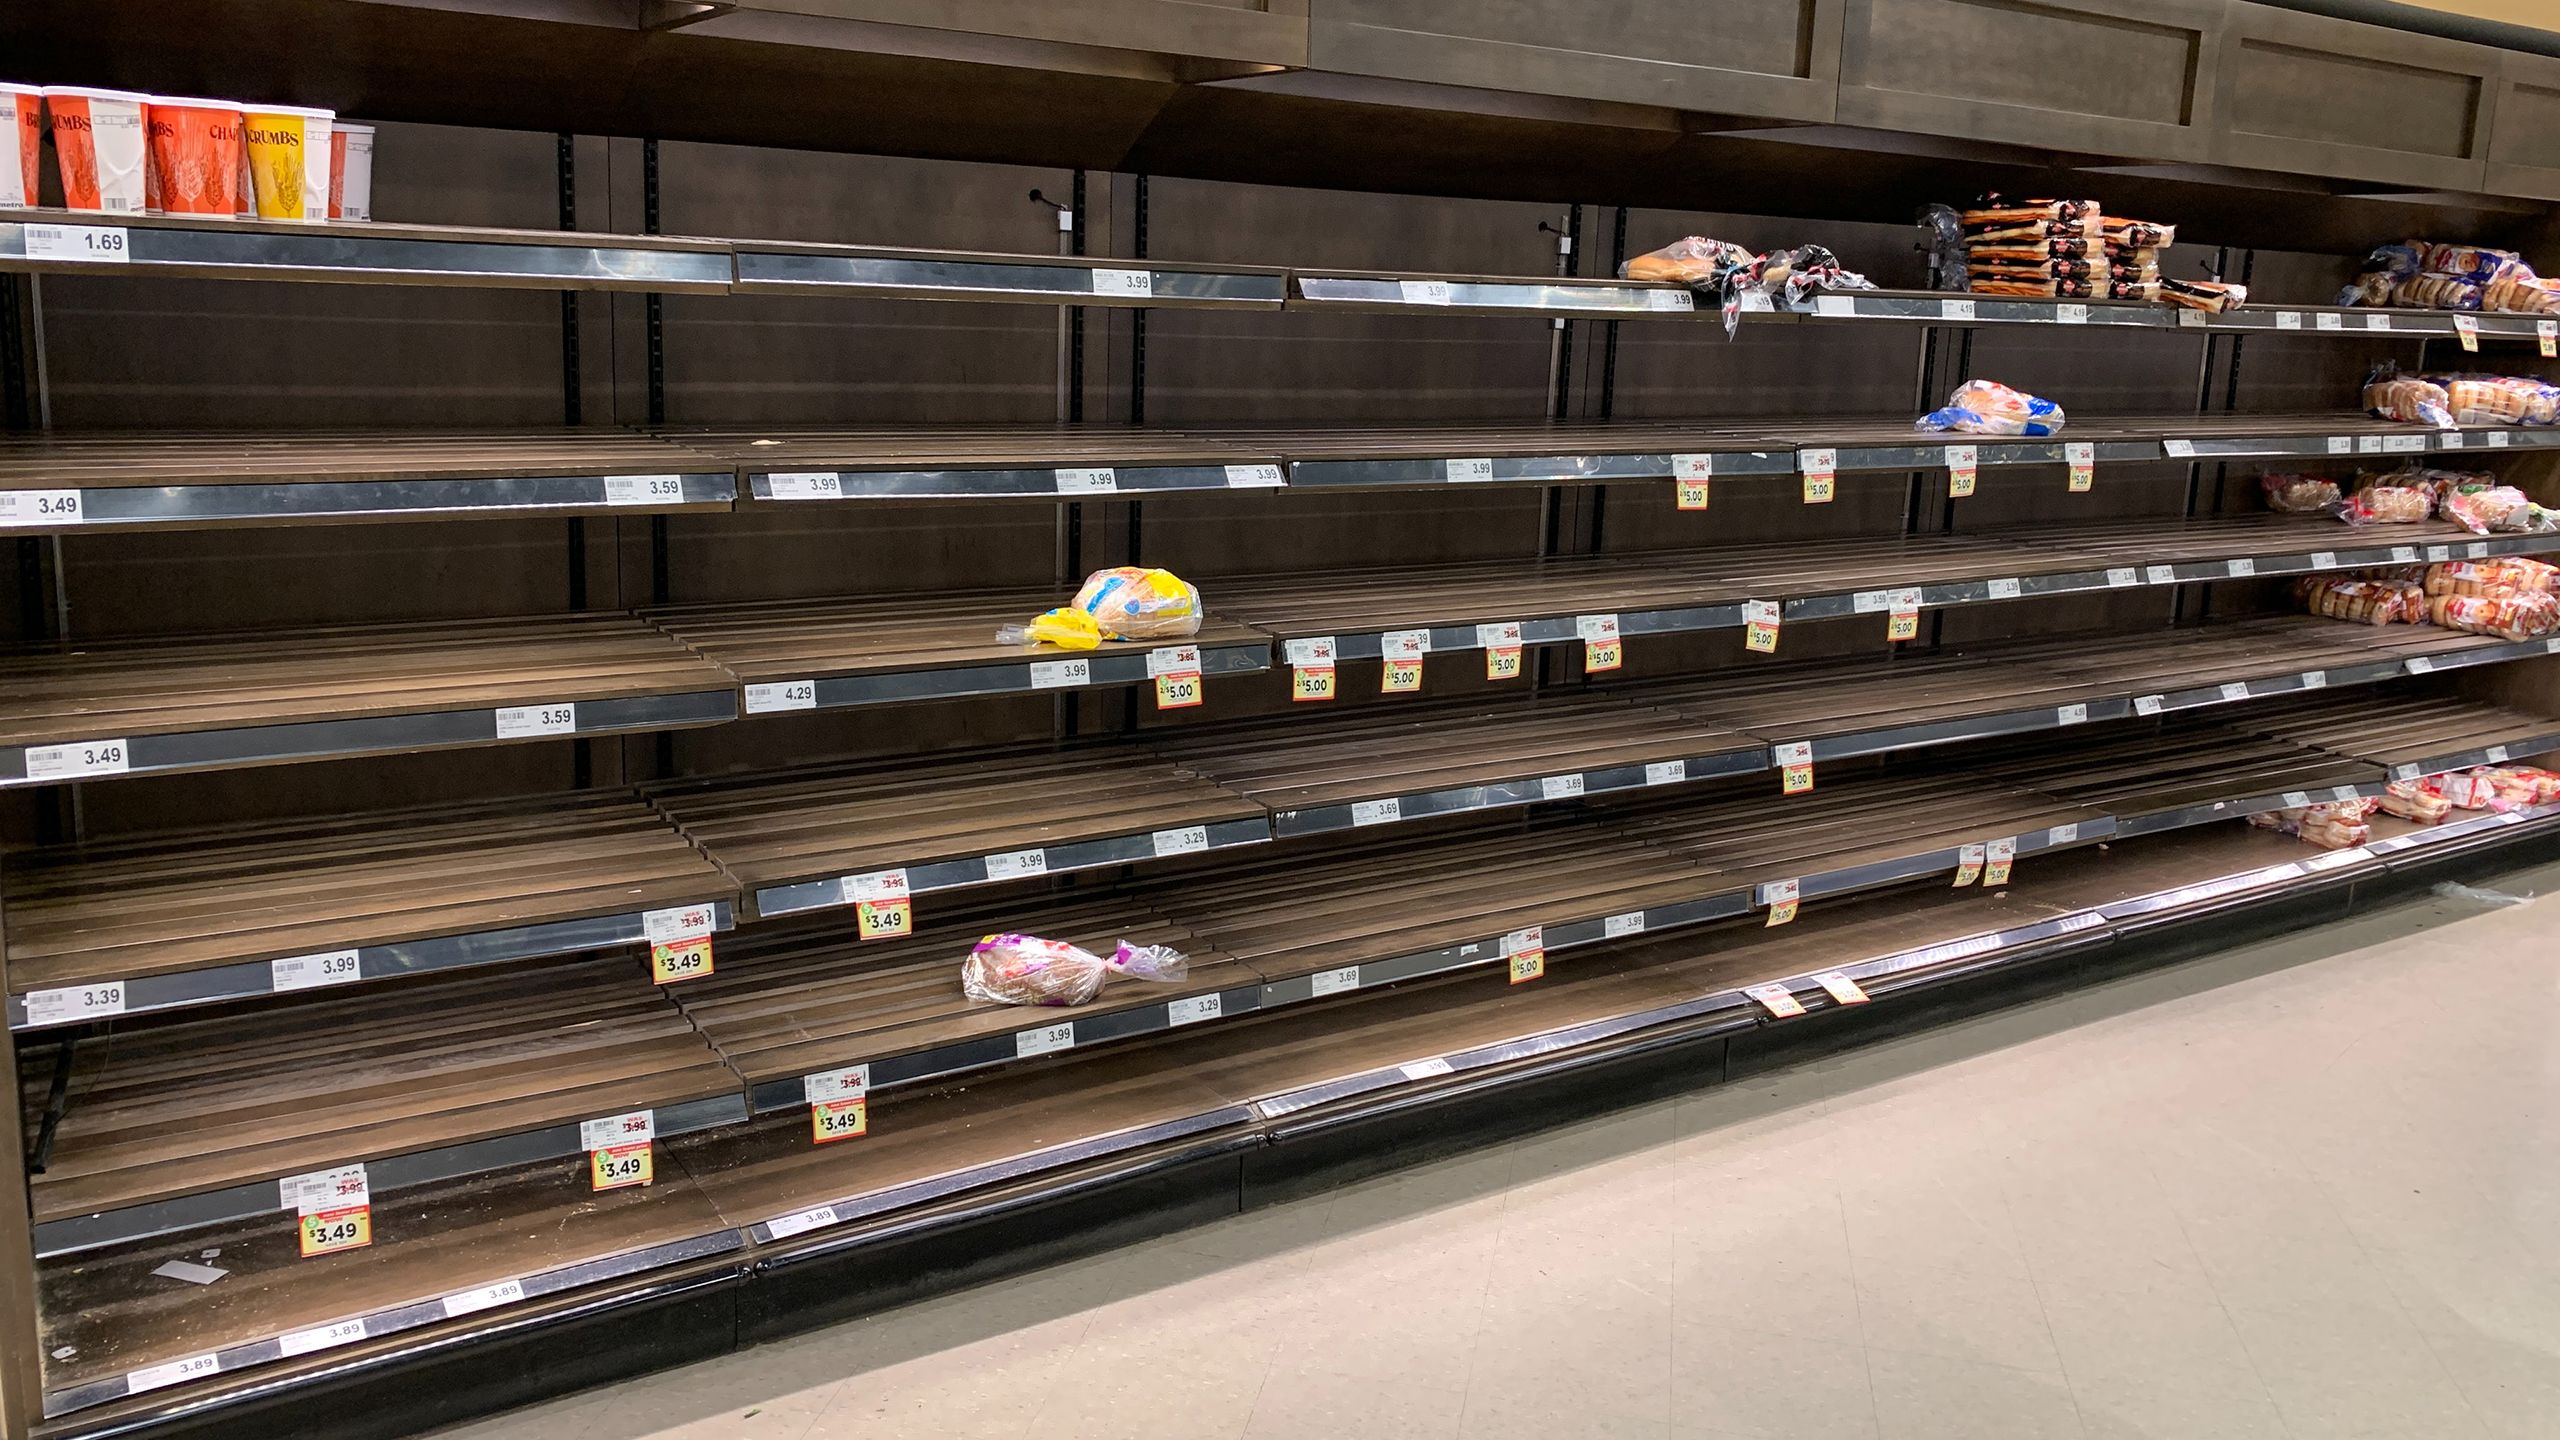 Bare supermarket shelves